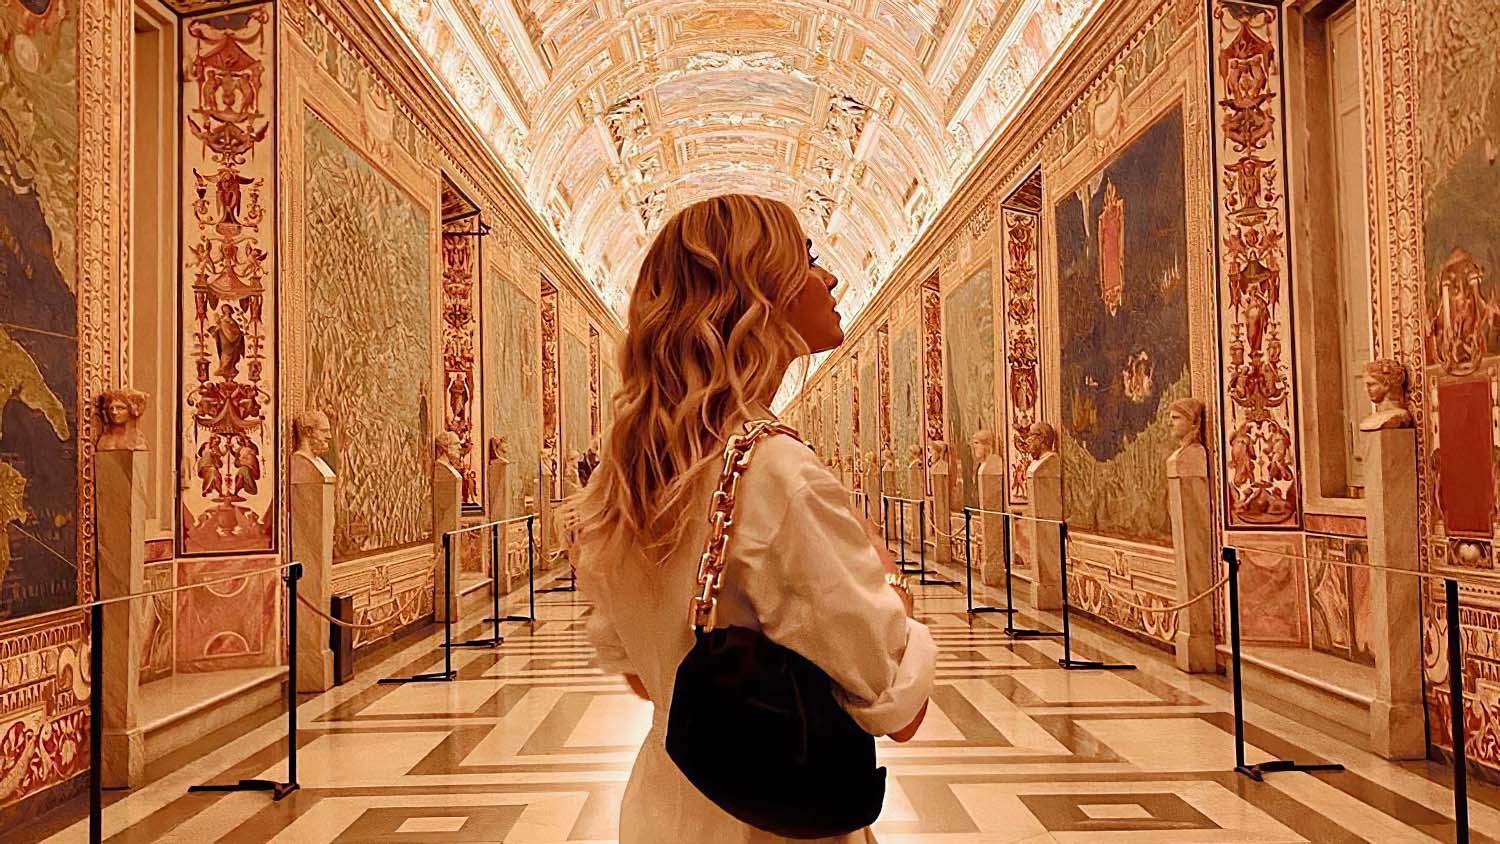 Chiara Ferragni Musei Vaticani IF Experience visita esclusiva bloginternettuale